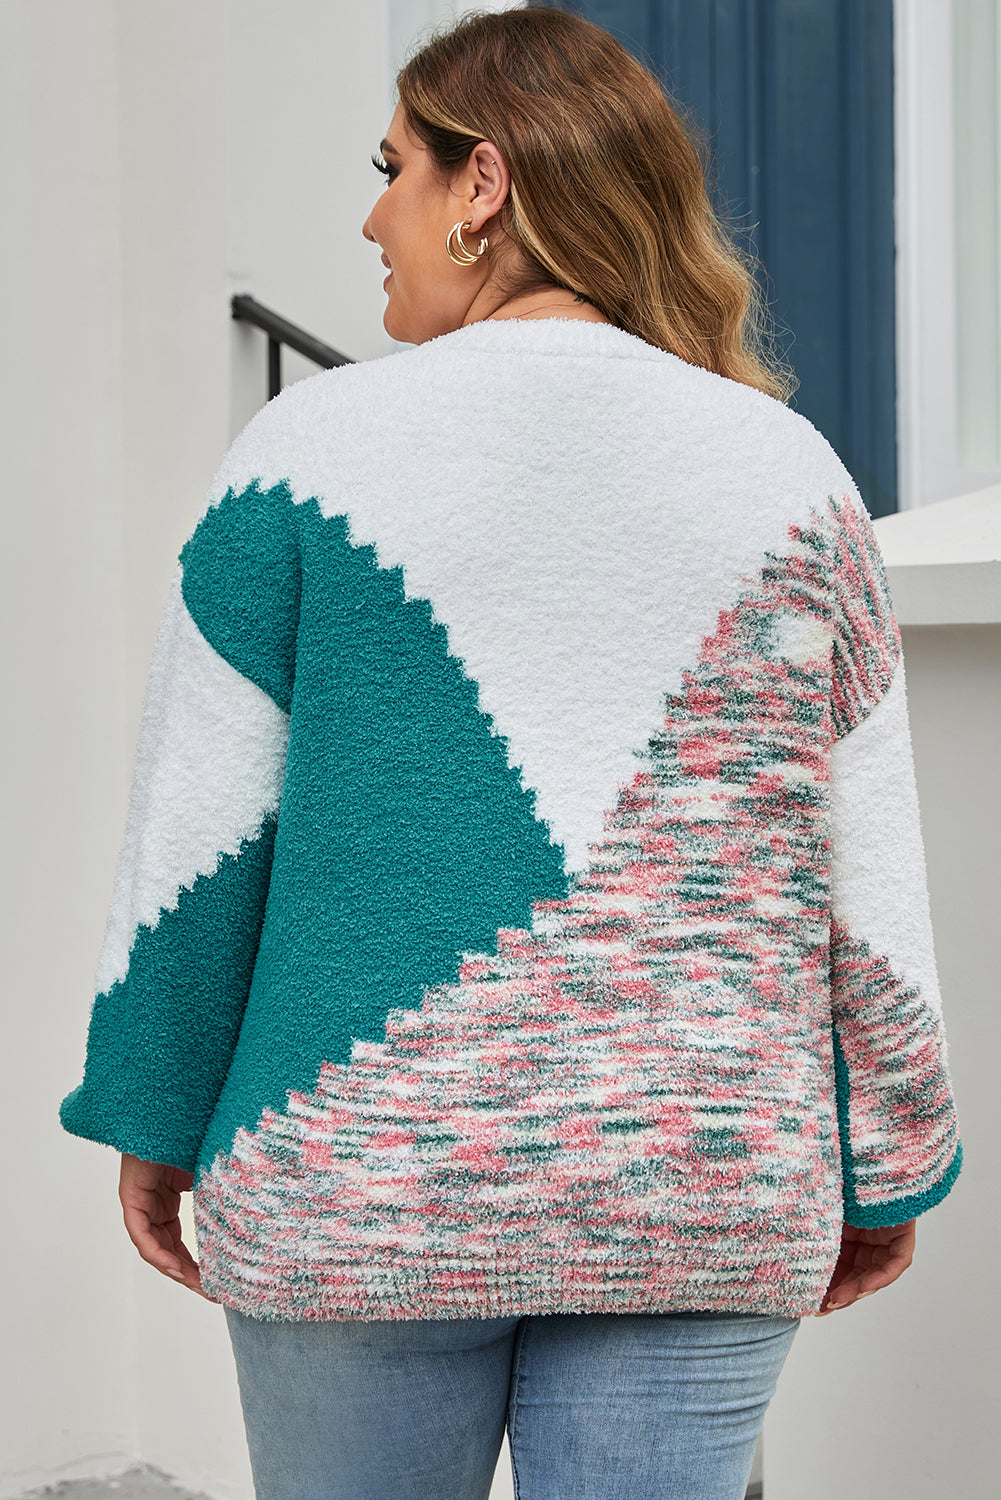 Raznobojni džemper veće veličine s izrezbarenim bojama